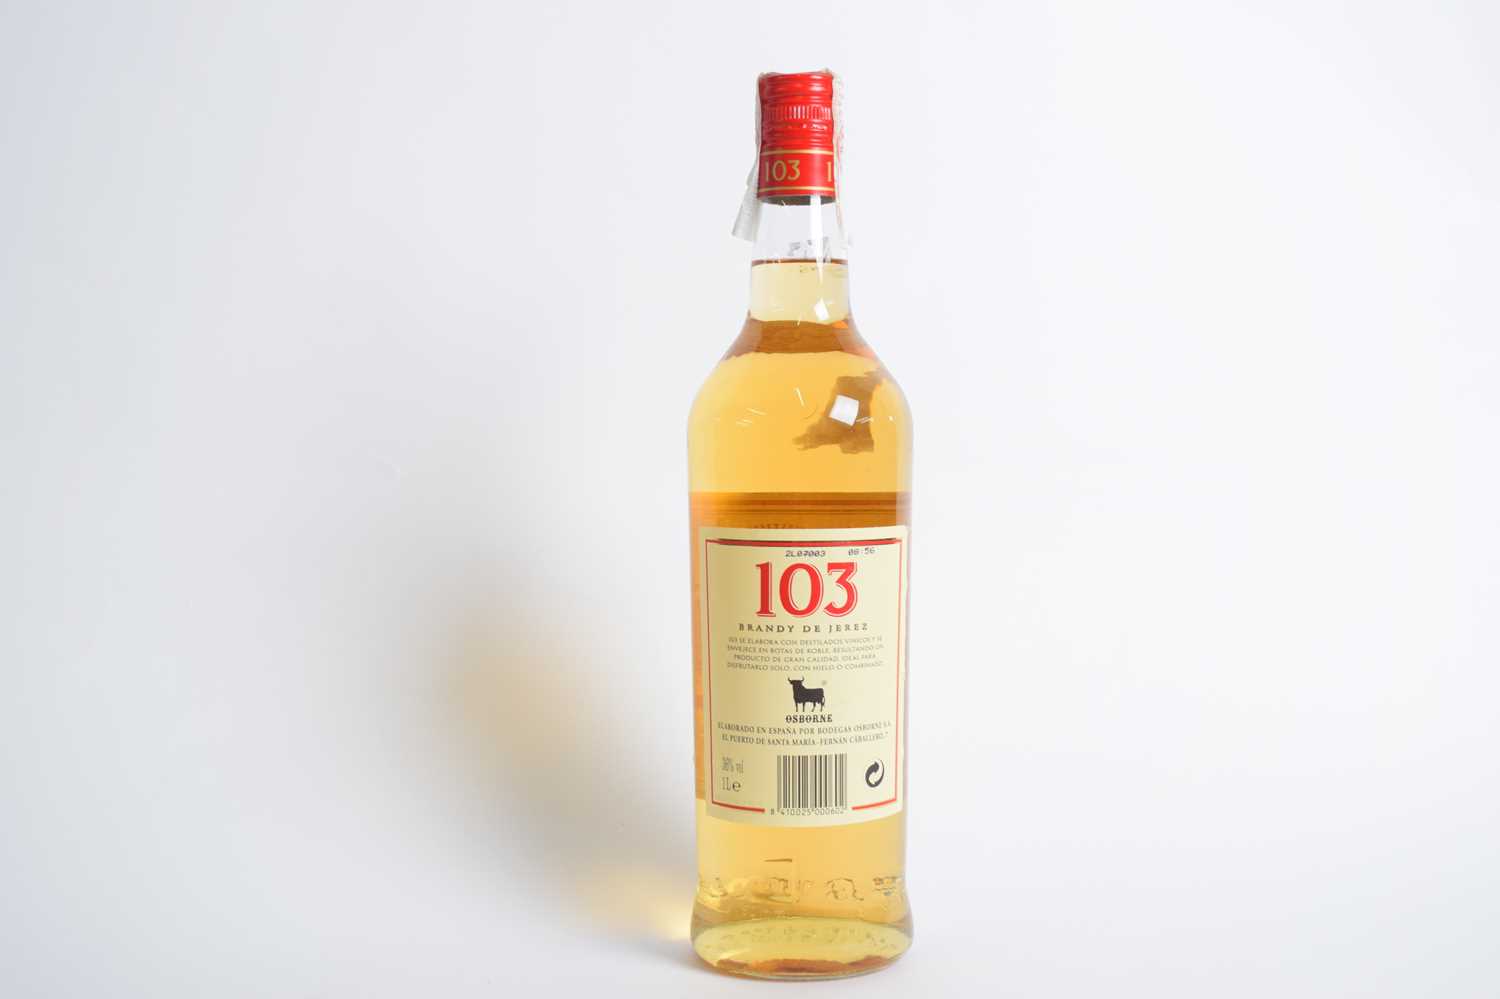 One bottle Brandy de Jerez, 103 Solera, 1 ltr - Image 3 of 3